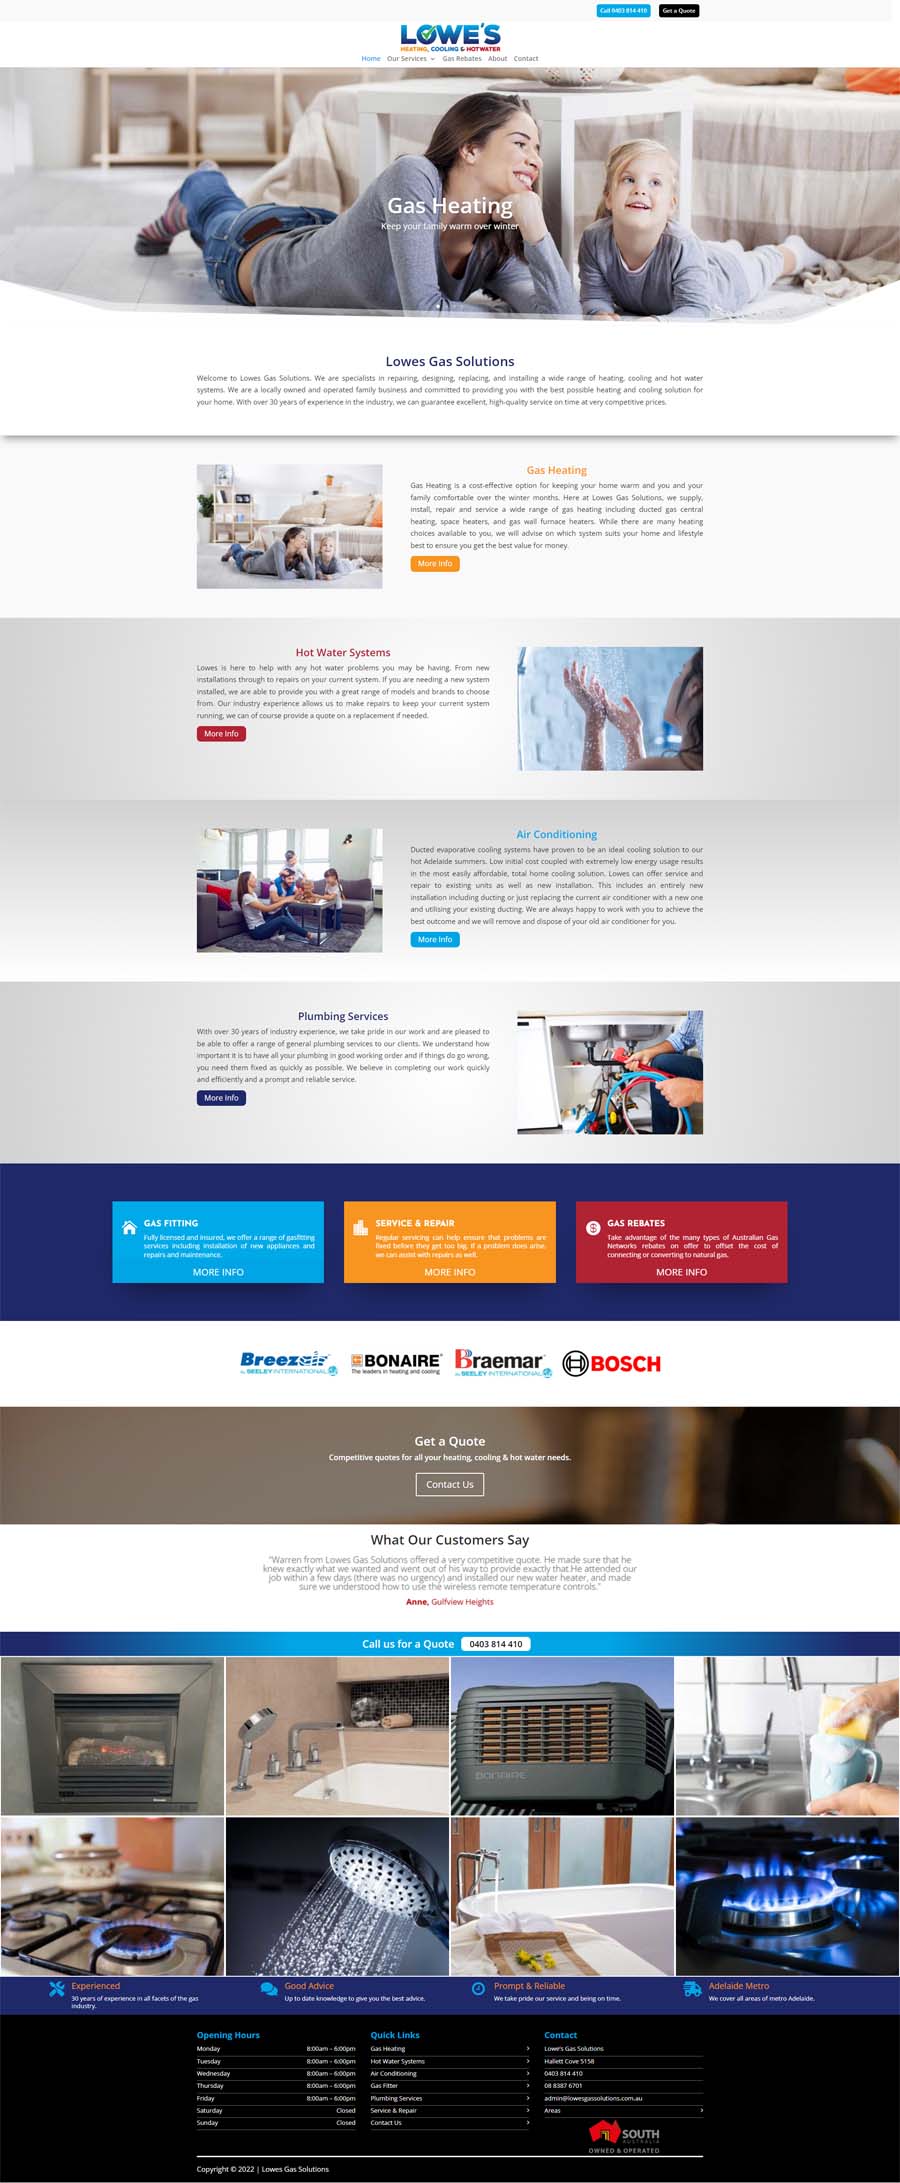 Website Design Adelaide - Quality Control